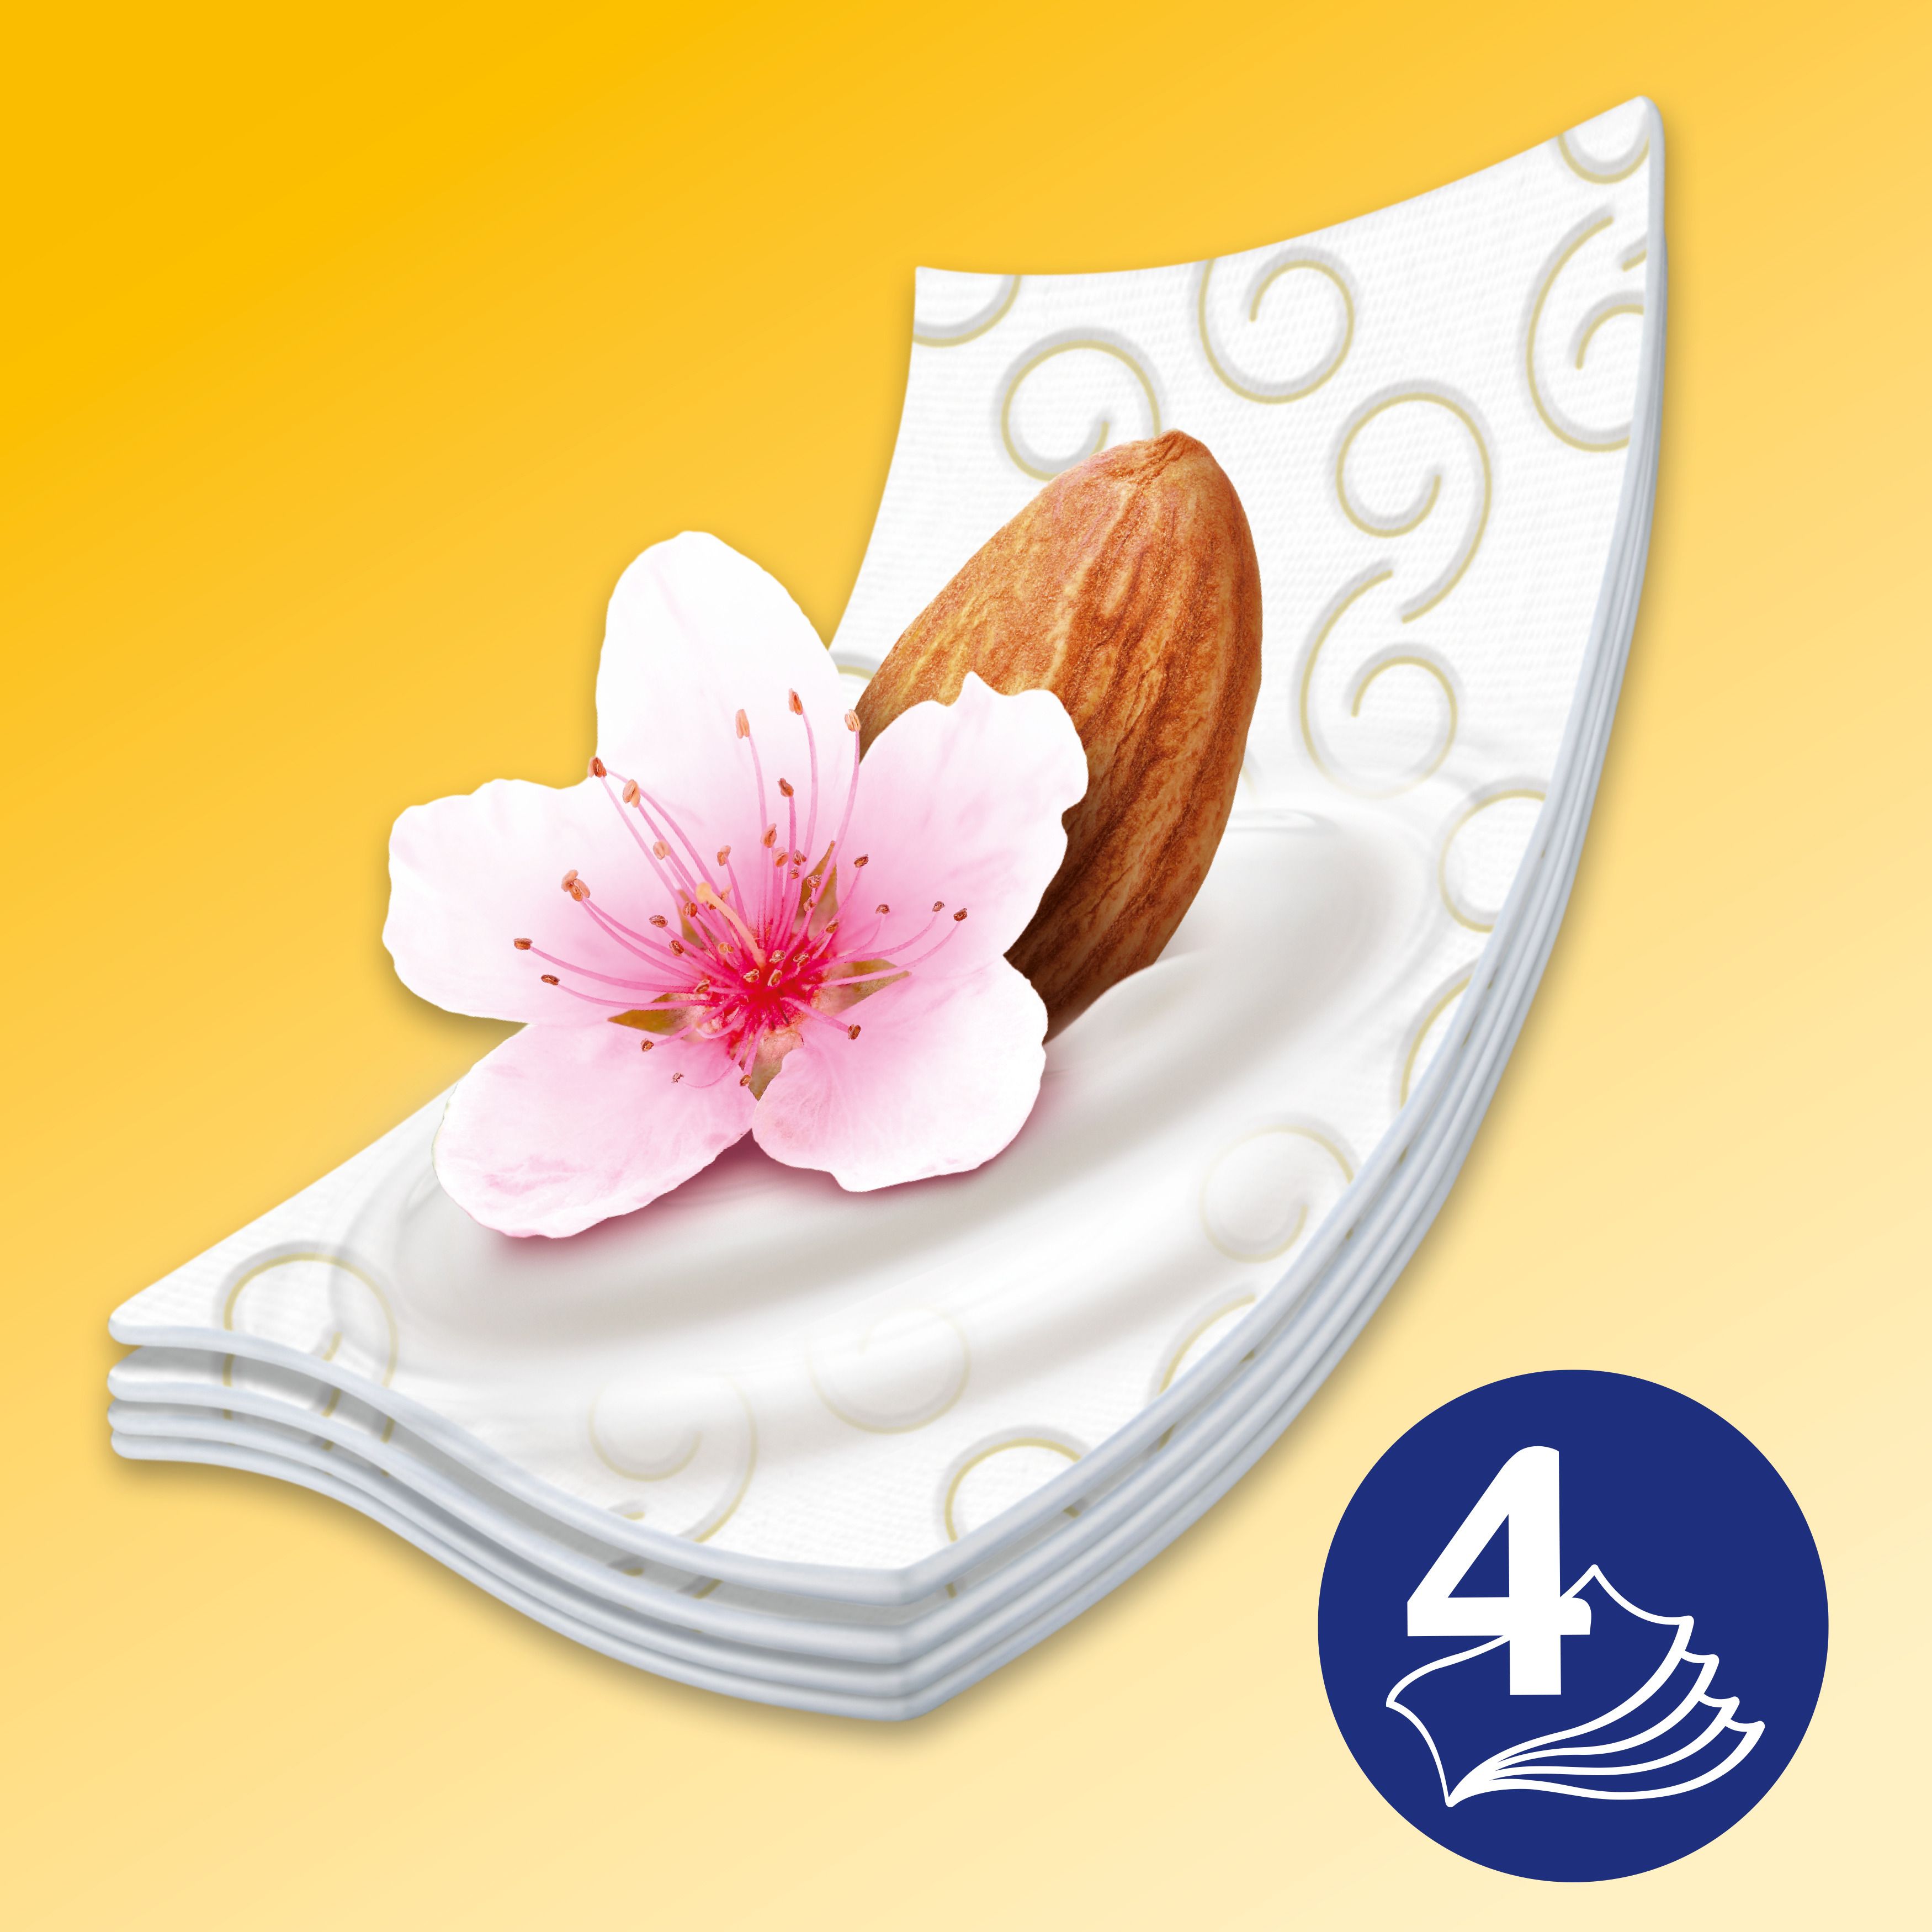 Туалетная бумага Zewa Exclusive Almond Blossom четырехслойная 8 рулонов - фото 3